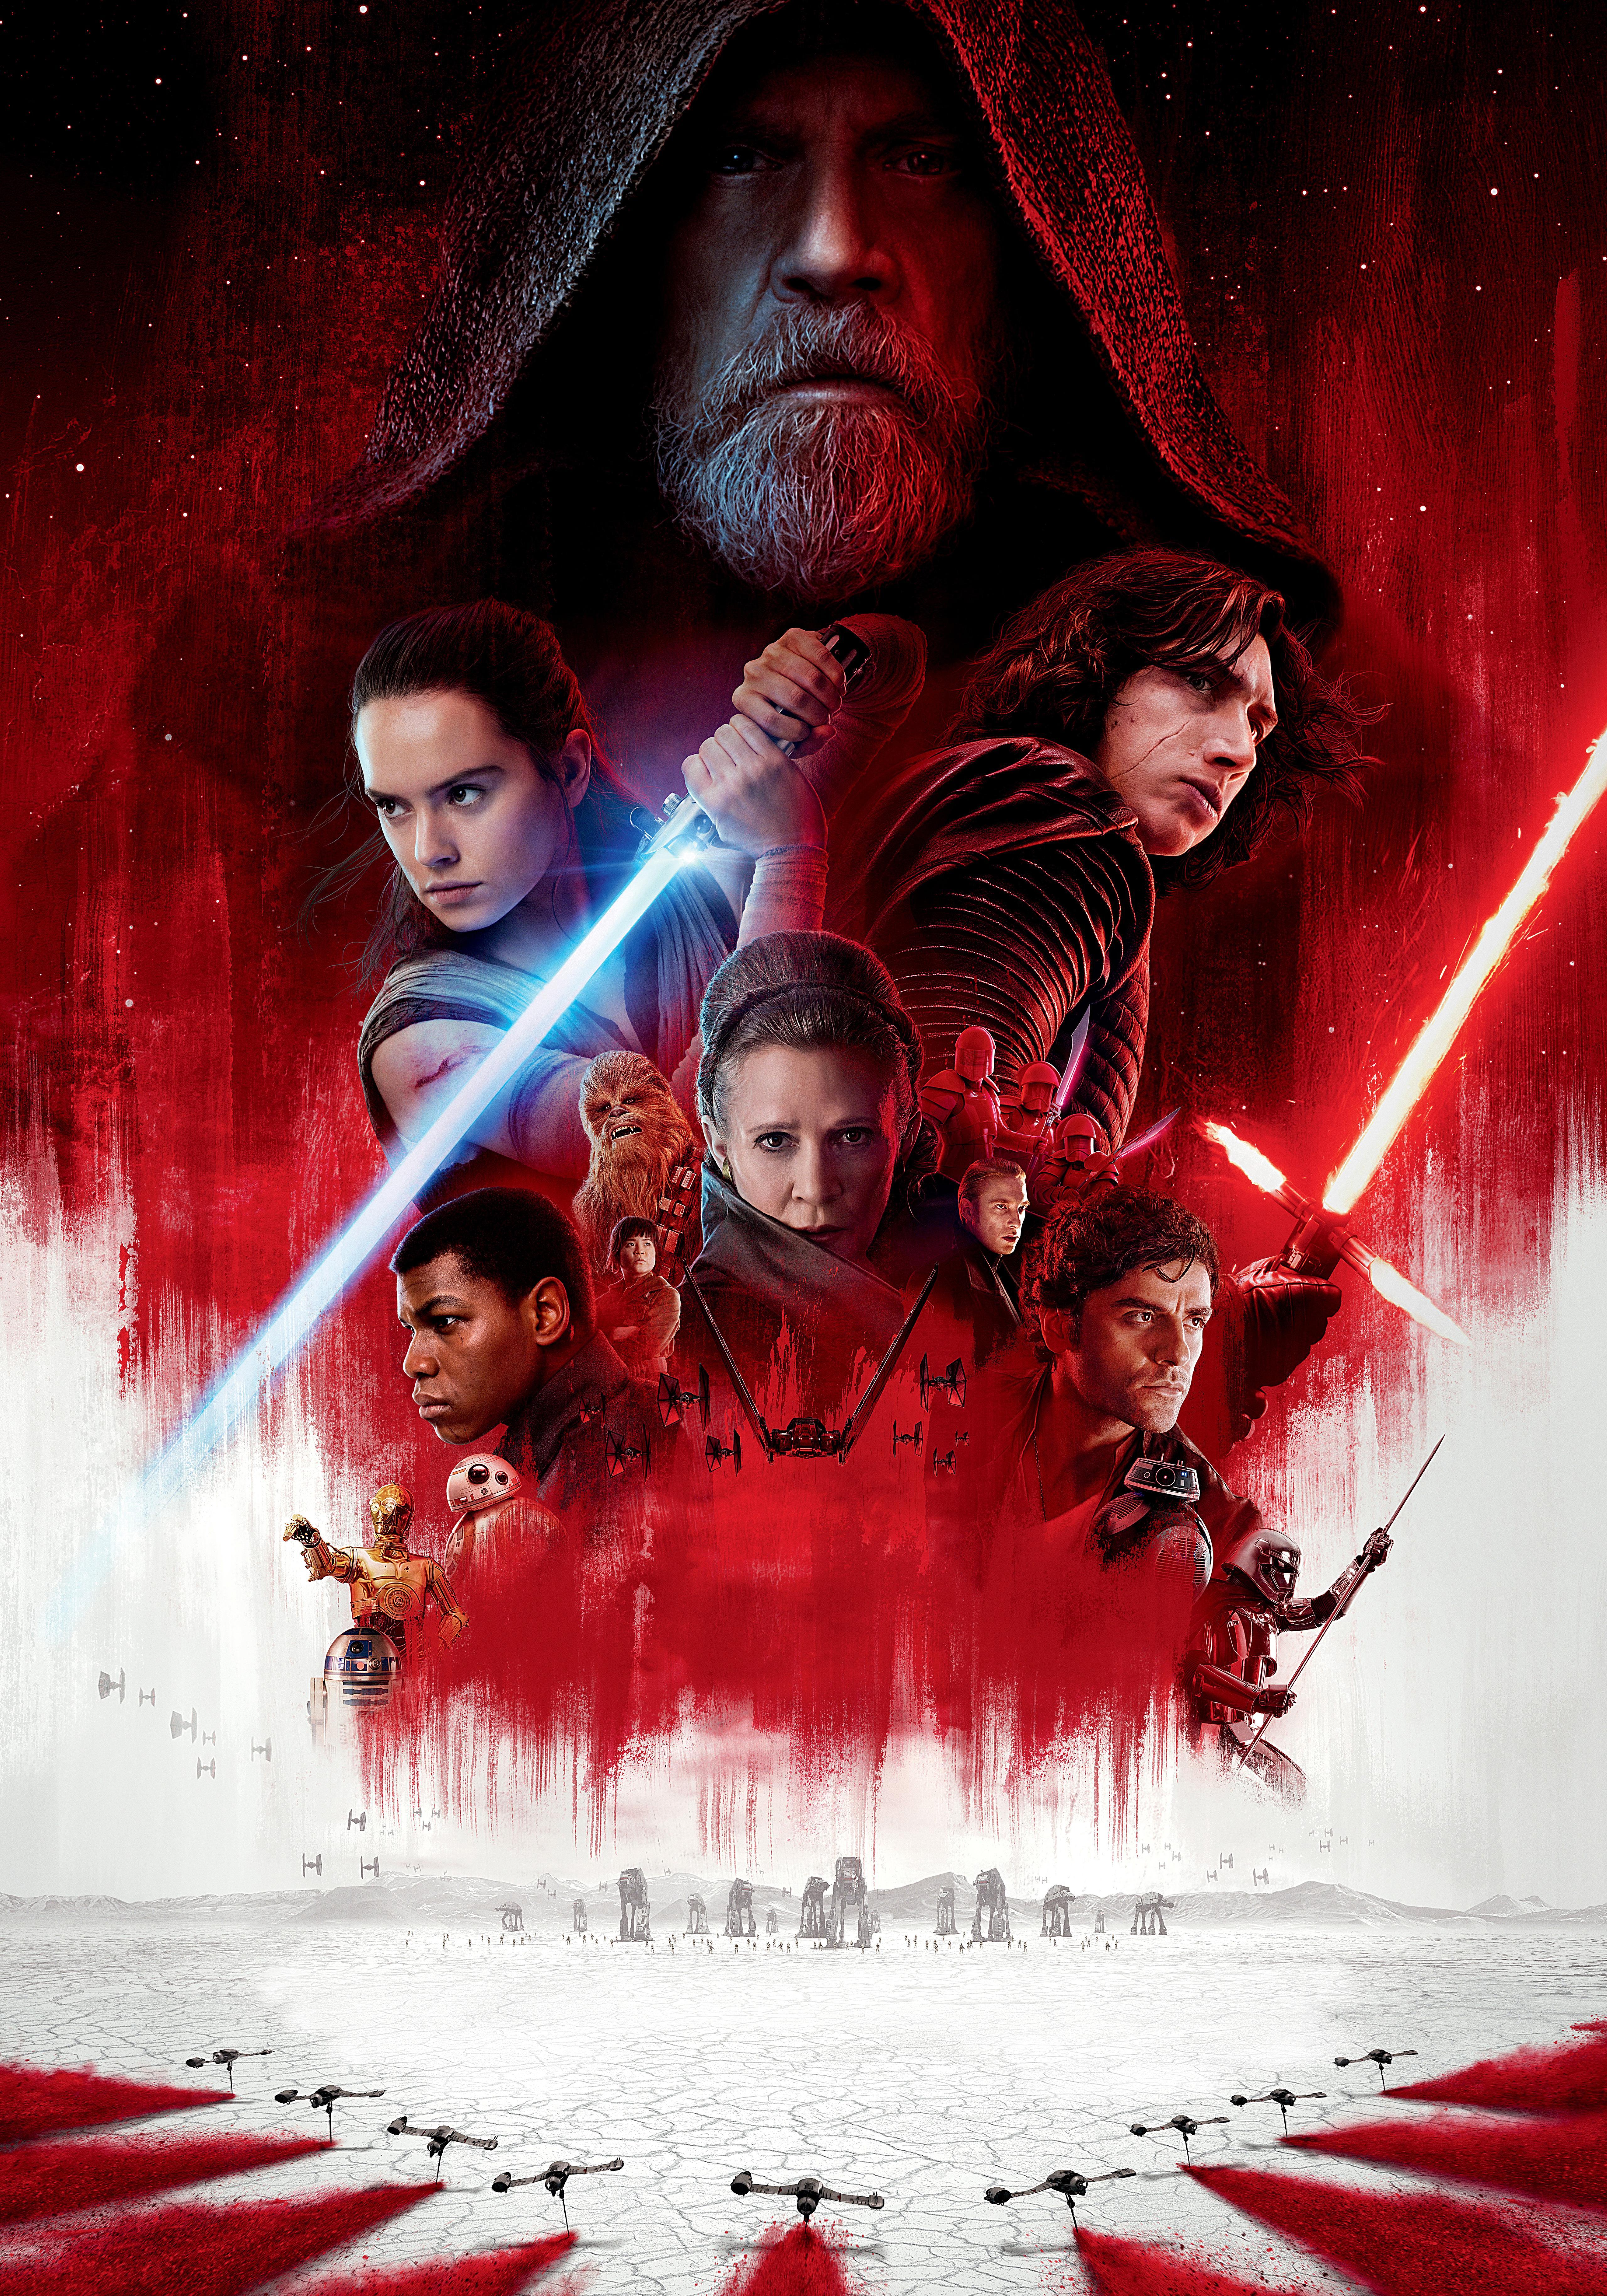 Wallpaper Star Wars: The Last Jedi, Princess Leia Organa, R2